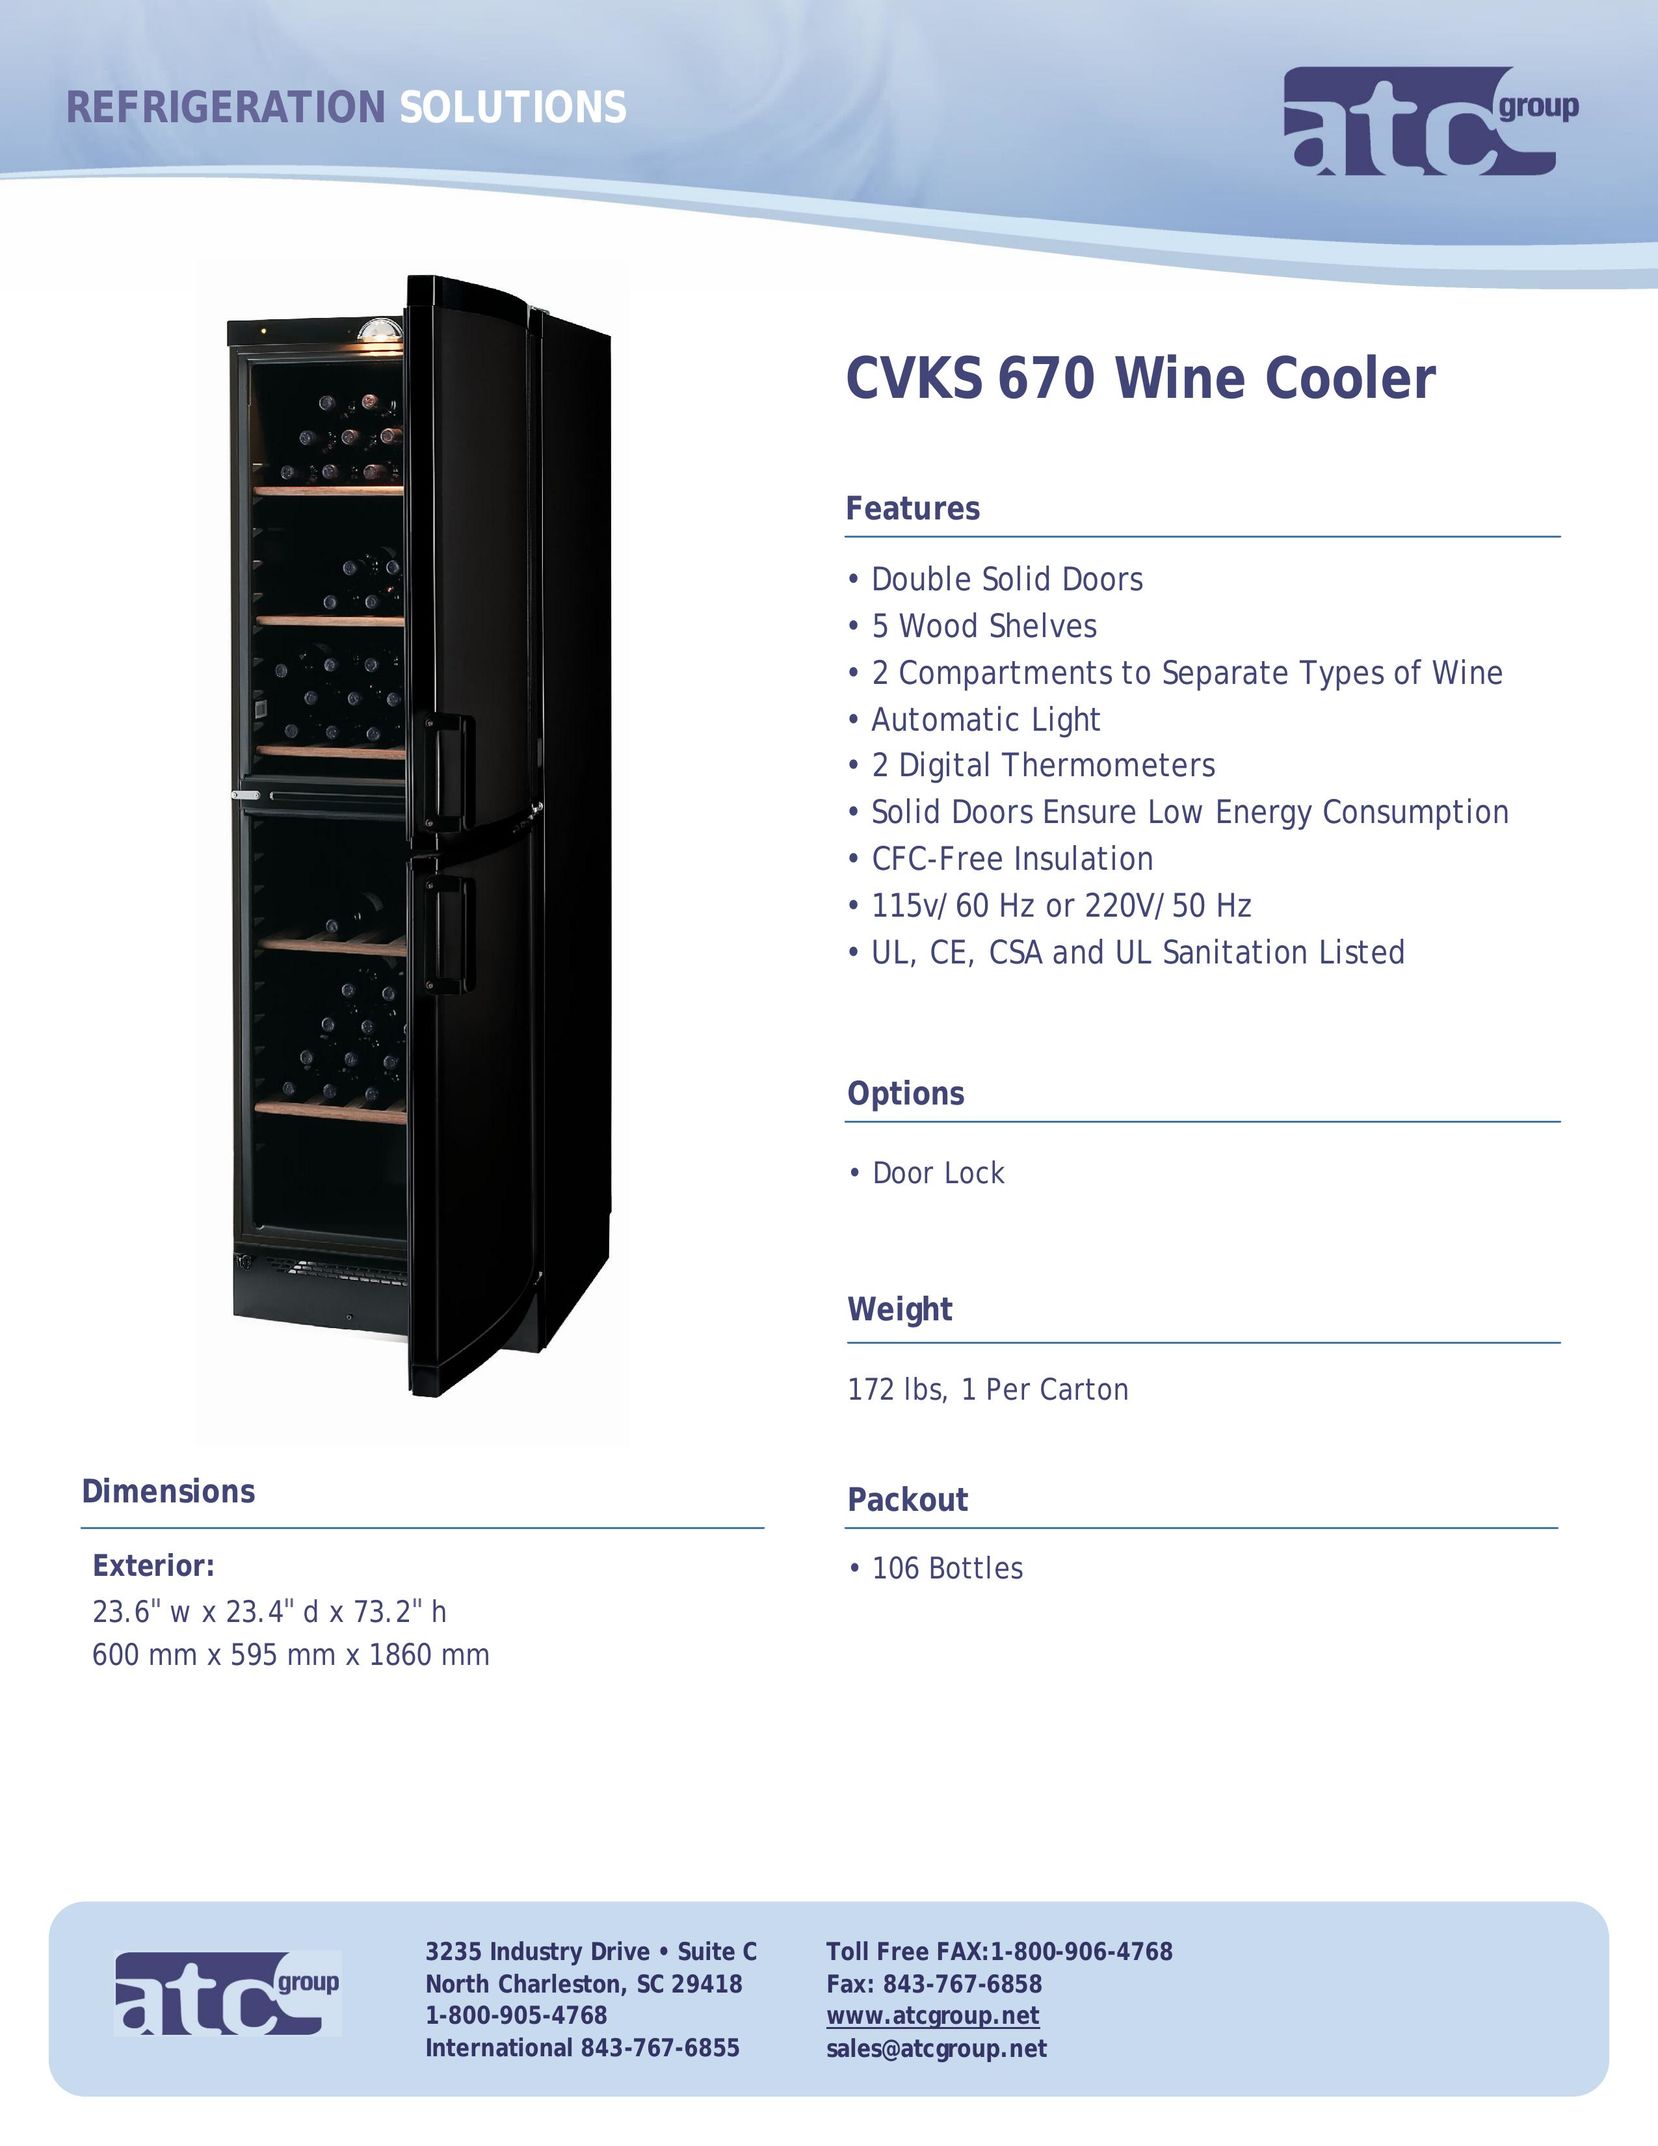 ATC Group CVKS670 Beverage Dispenser User Manual